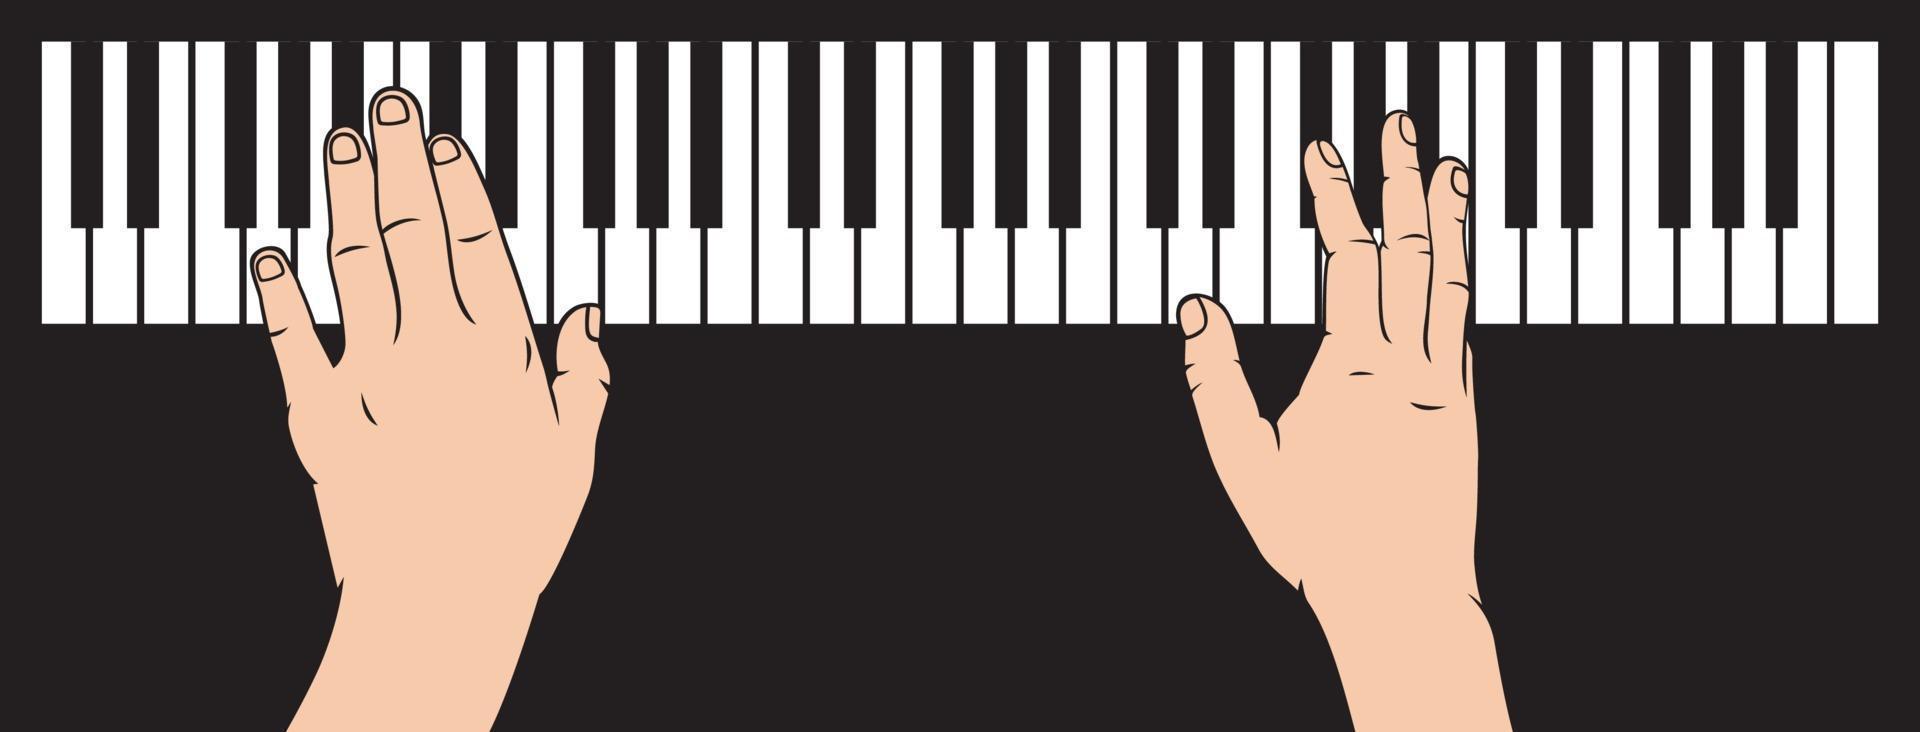 Hände spielen Klavier vektor